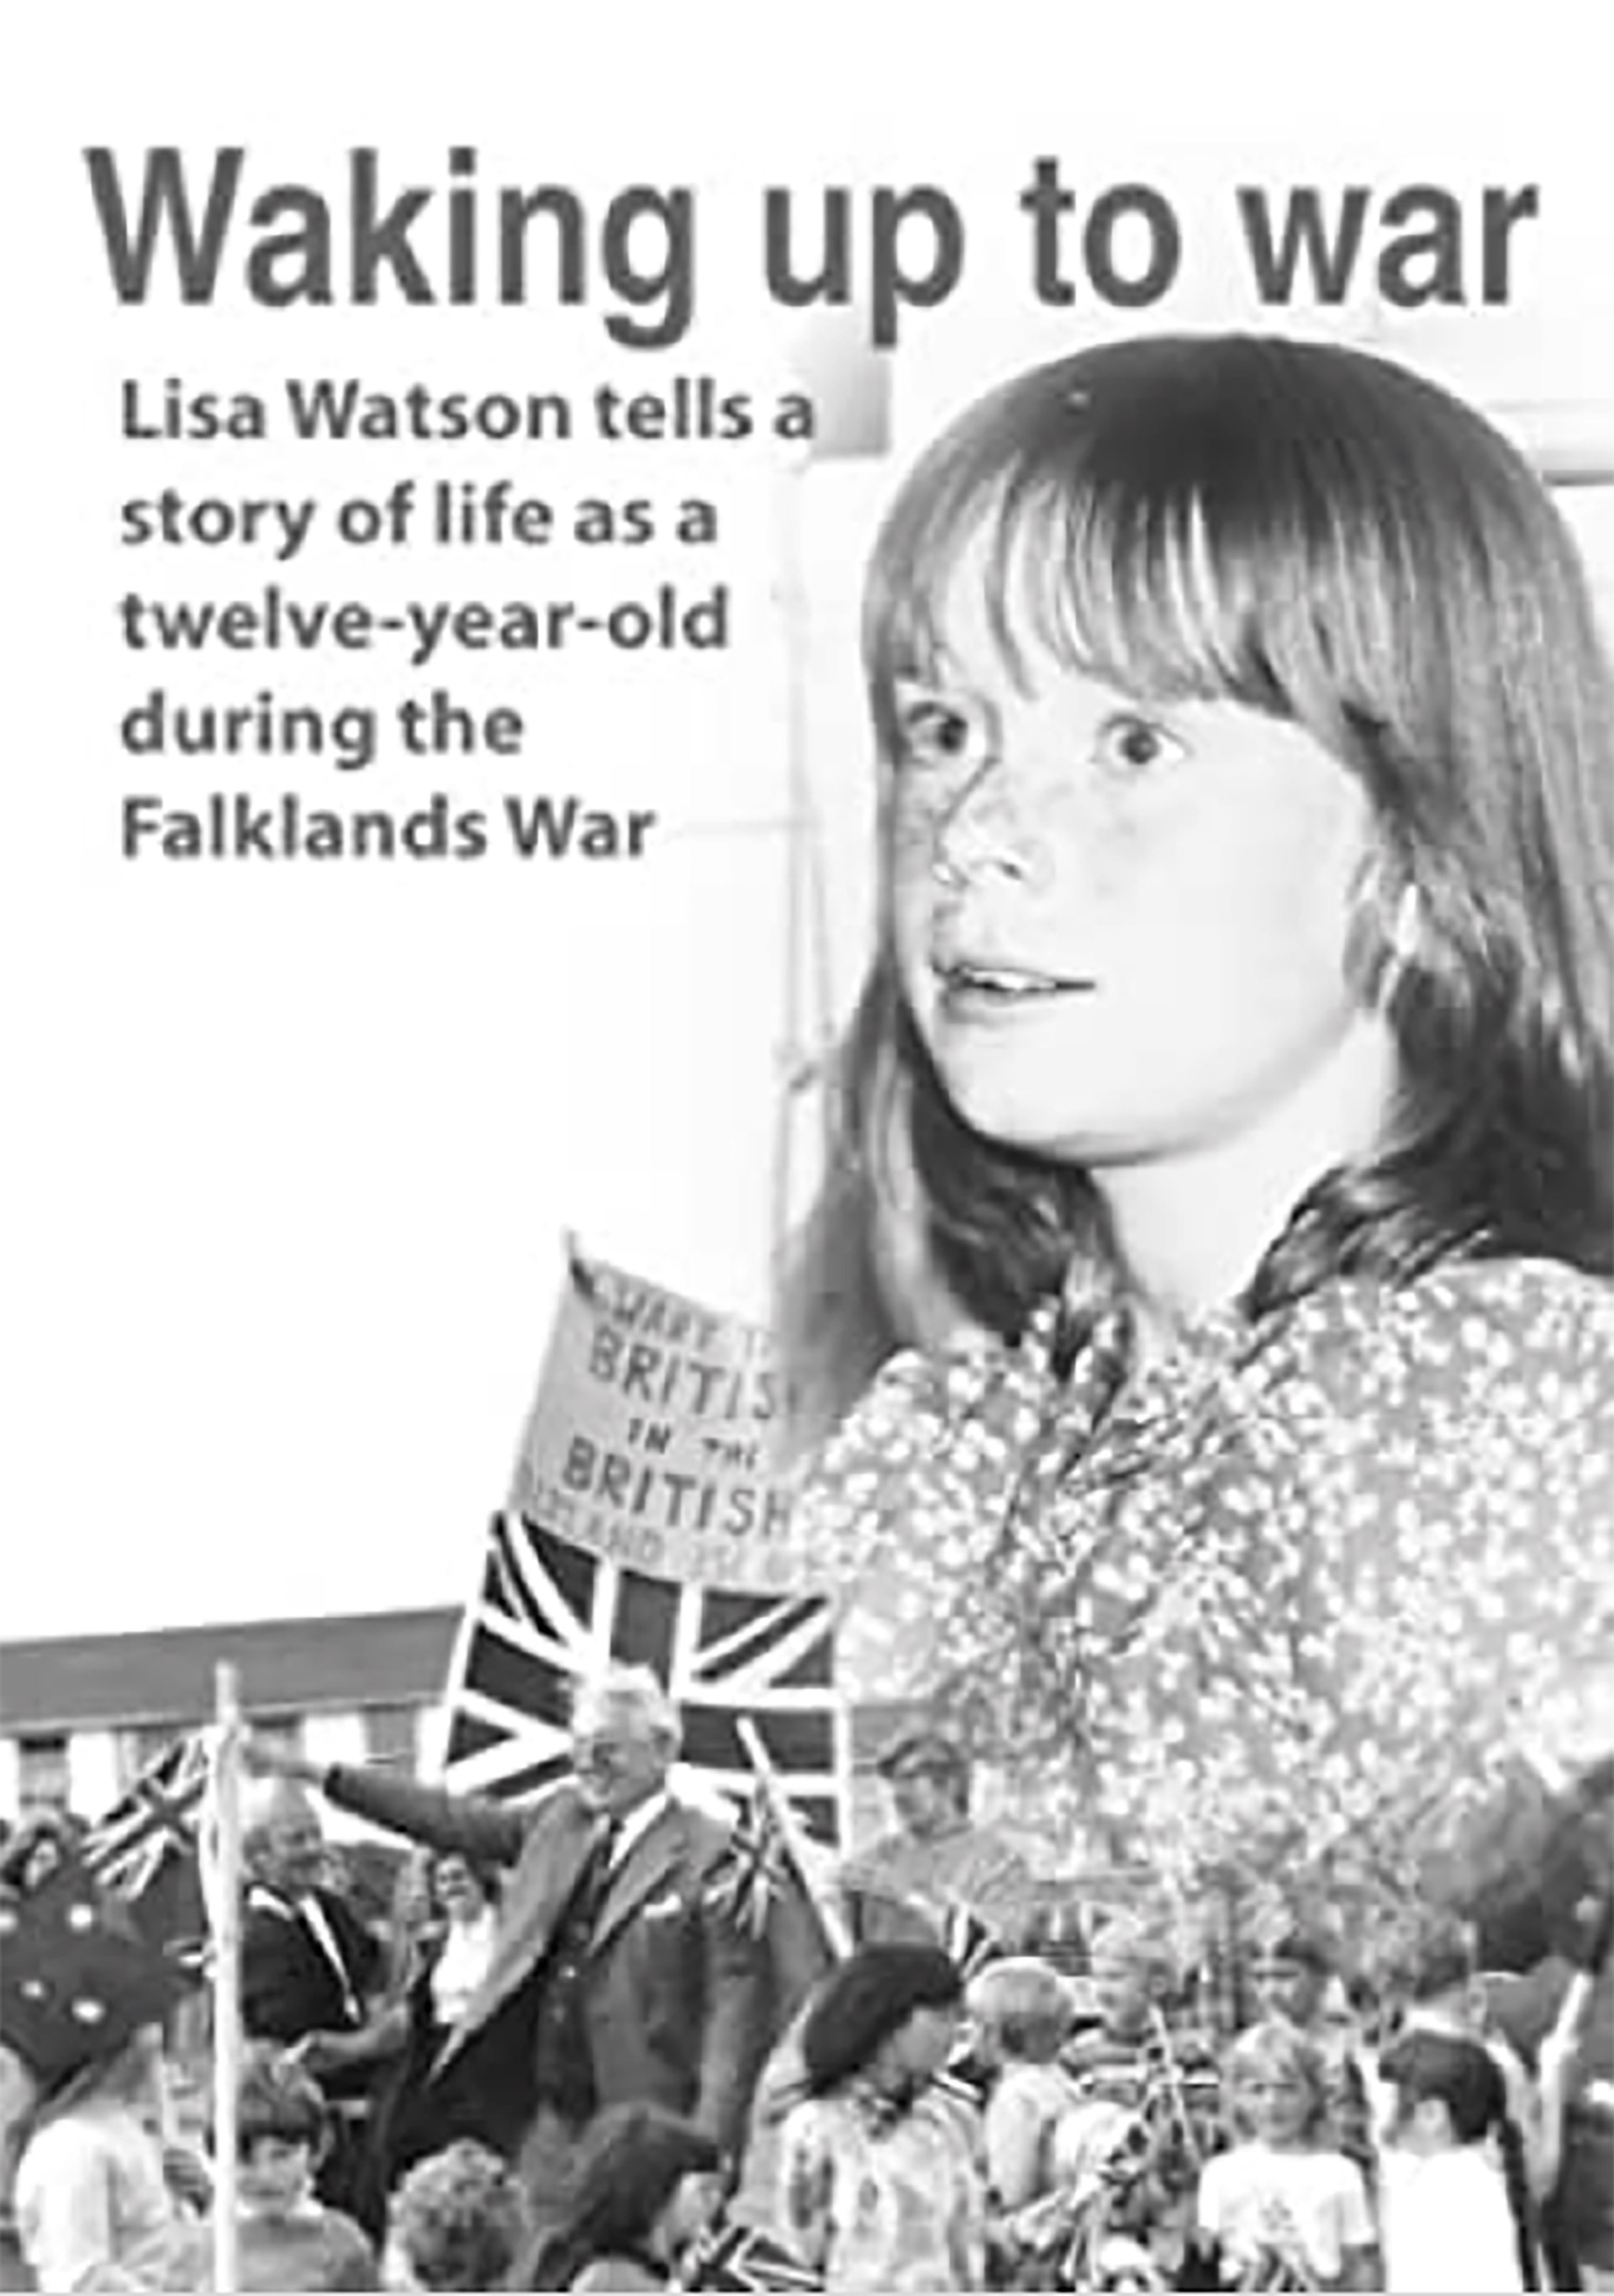 El libro de Lisa Watson sobre sus vivencias en la guerra como una niña de doce años